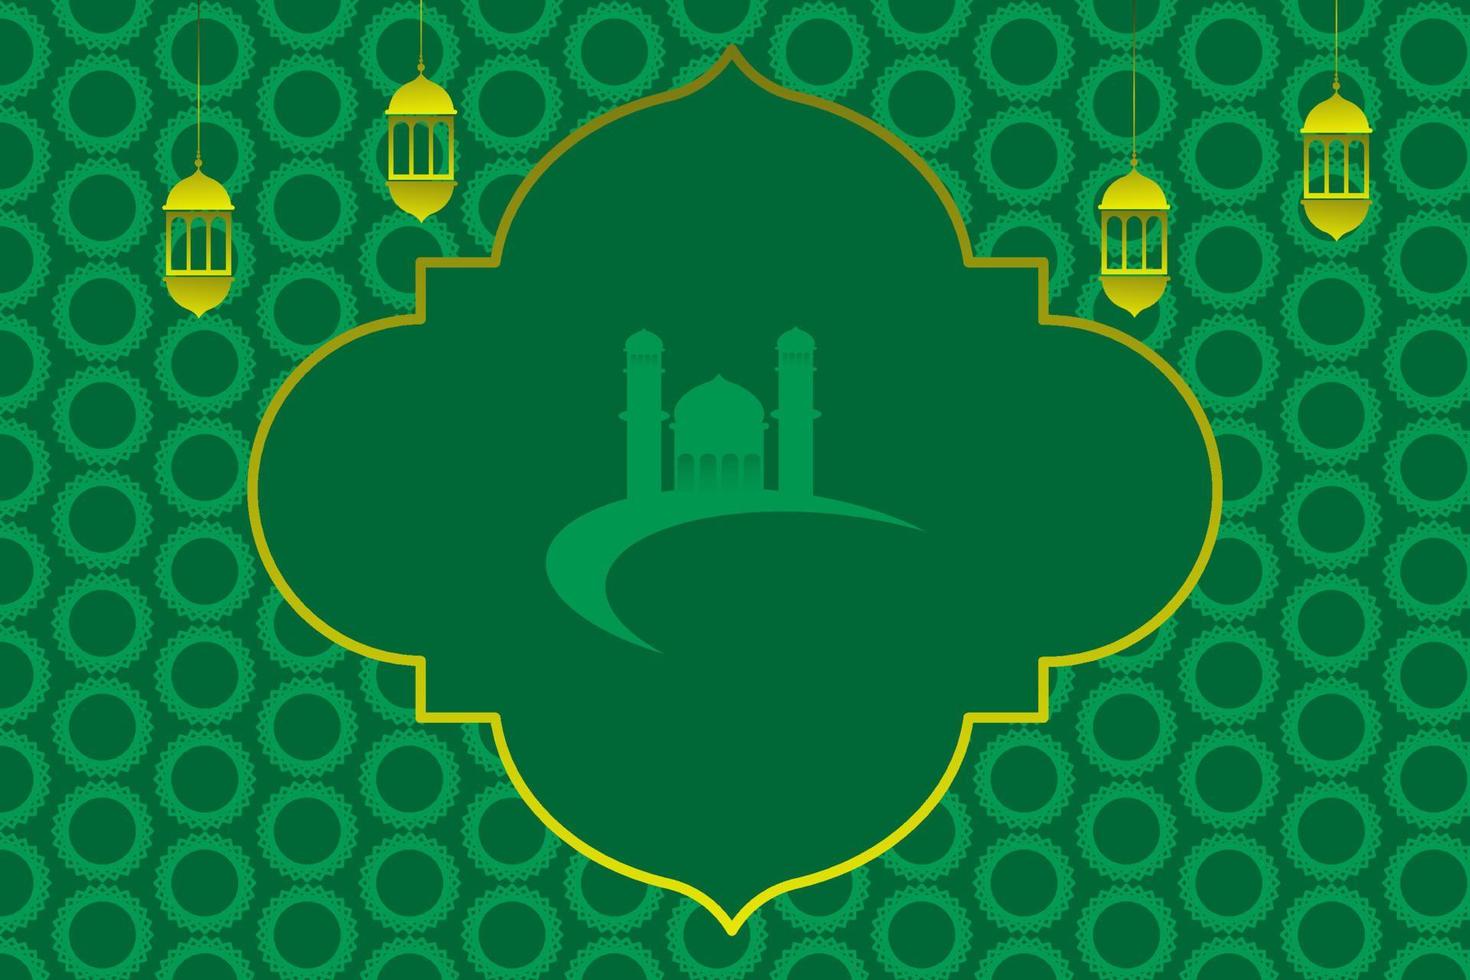 islamic bakgrund vektor med kopia Plats i de mitten. lämplig för firande av islamic högtider sådan som ramadan, eid al-fitr, och andra